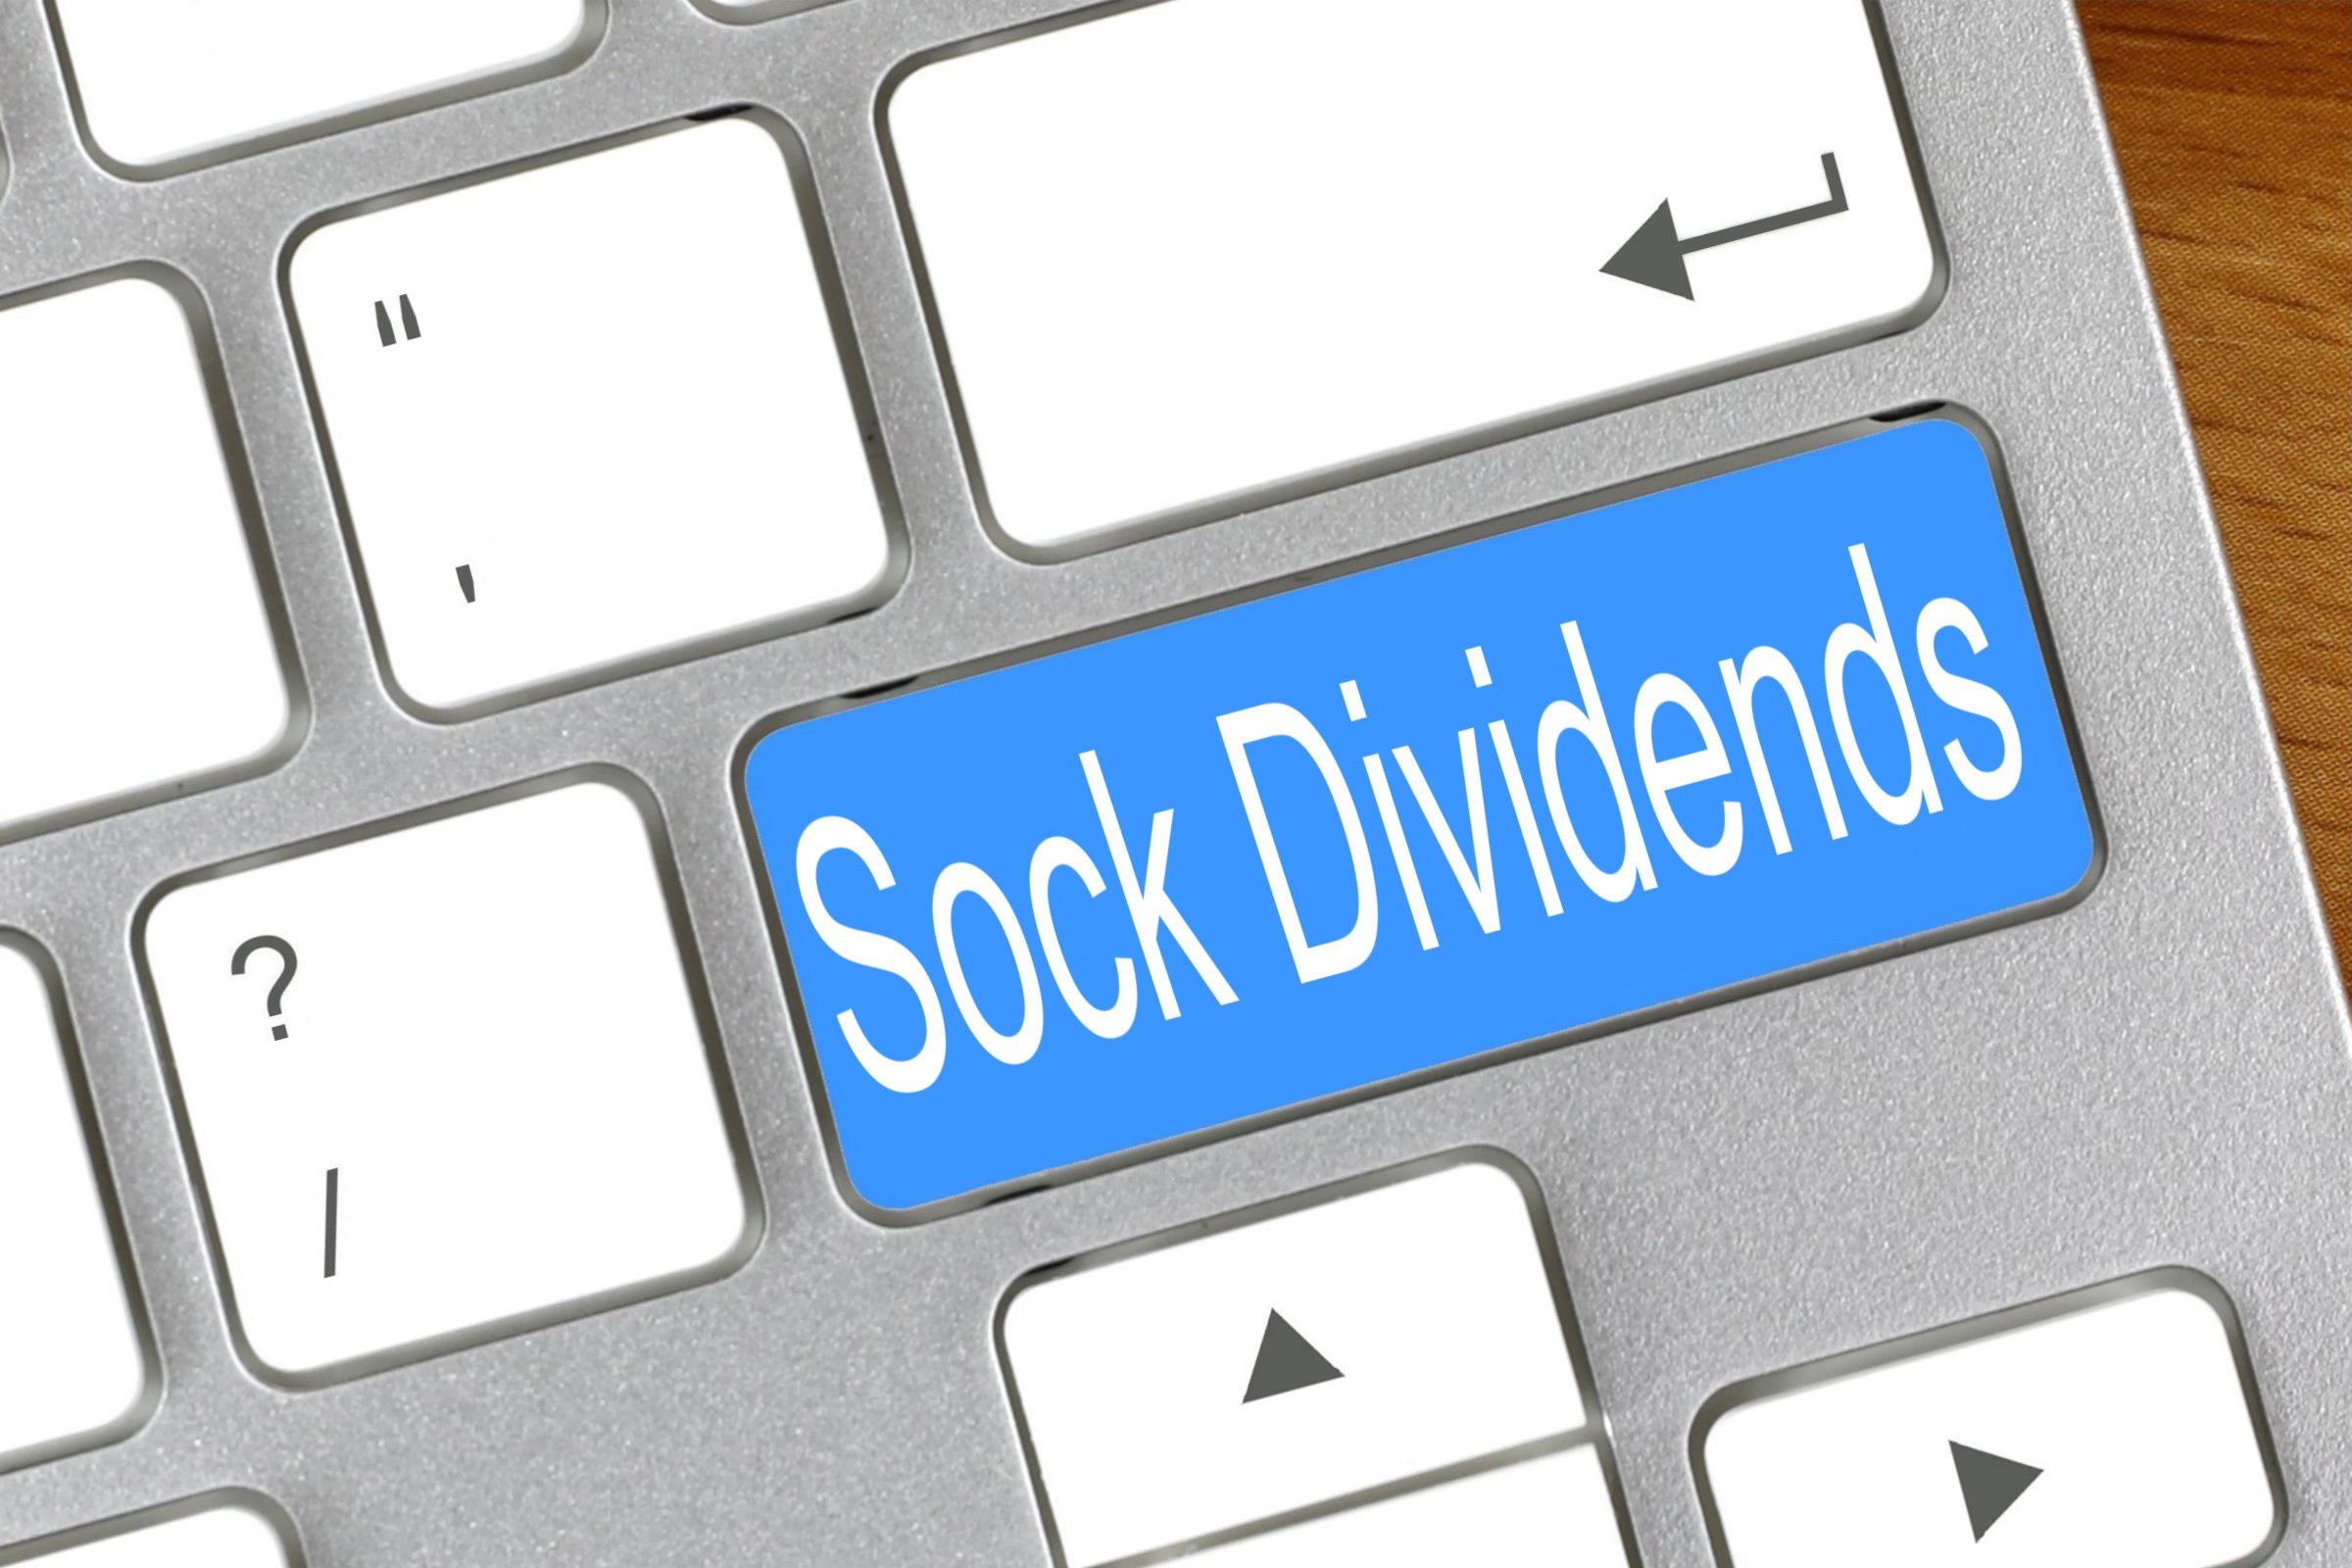 sock dividends